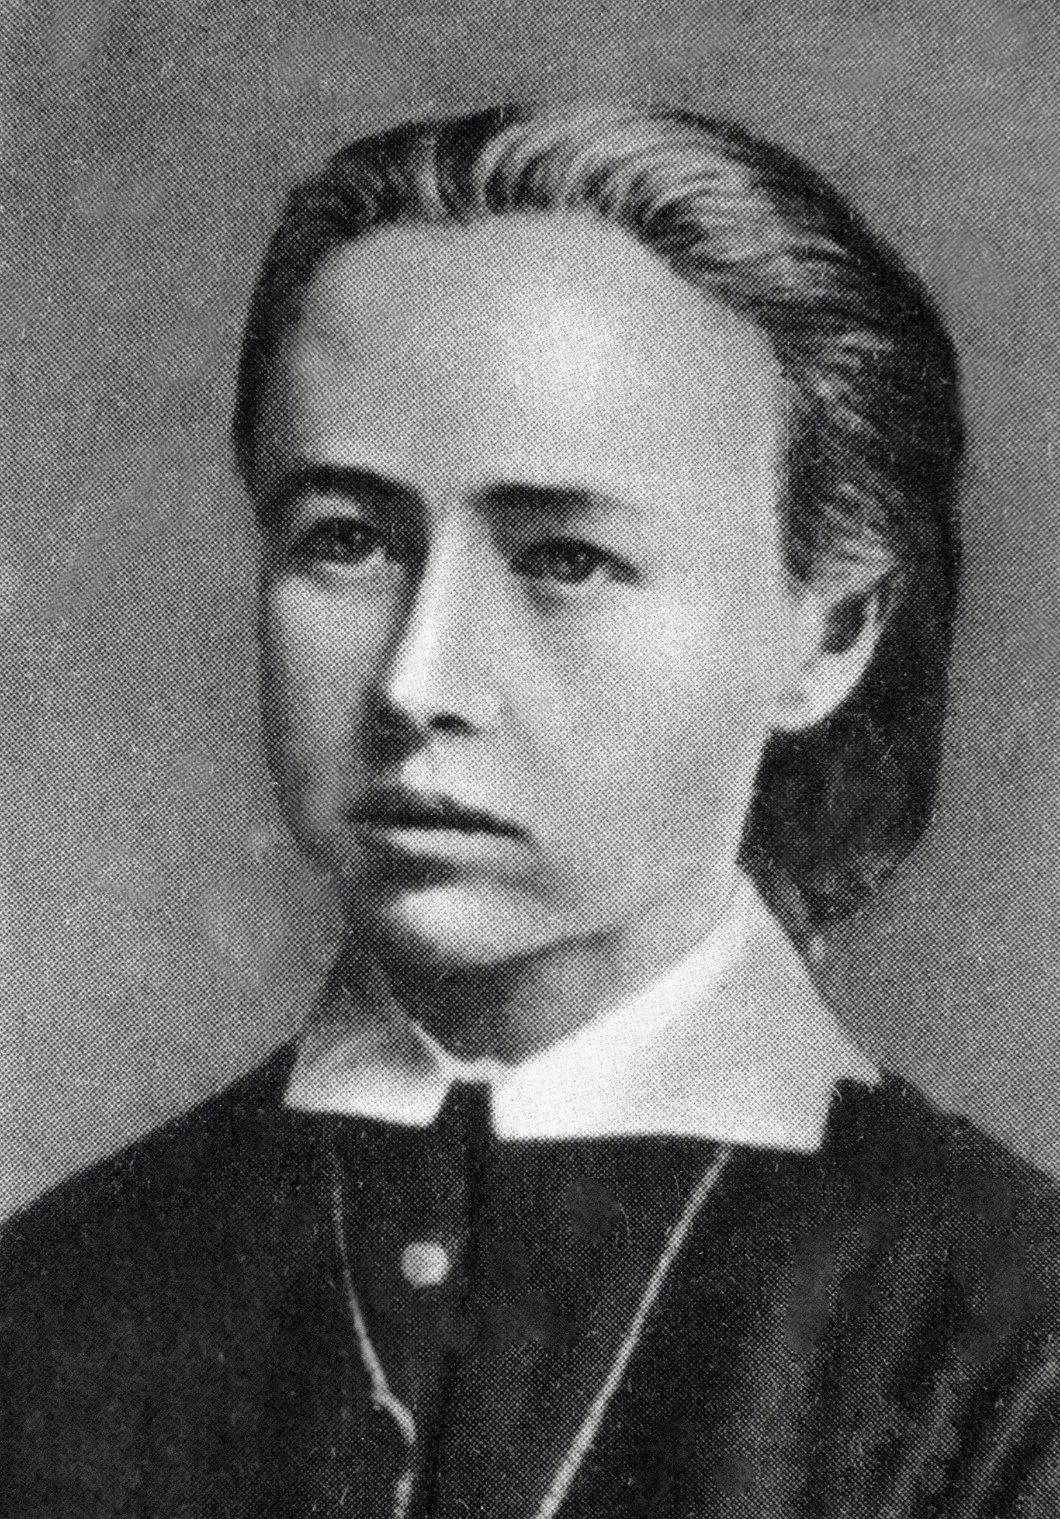 Софья Перовская — член общества «Народная воля». Участвовала в покушении на Александра II. Казнена 1 марта 1881 года.